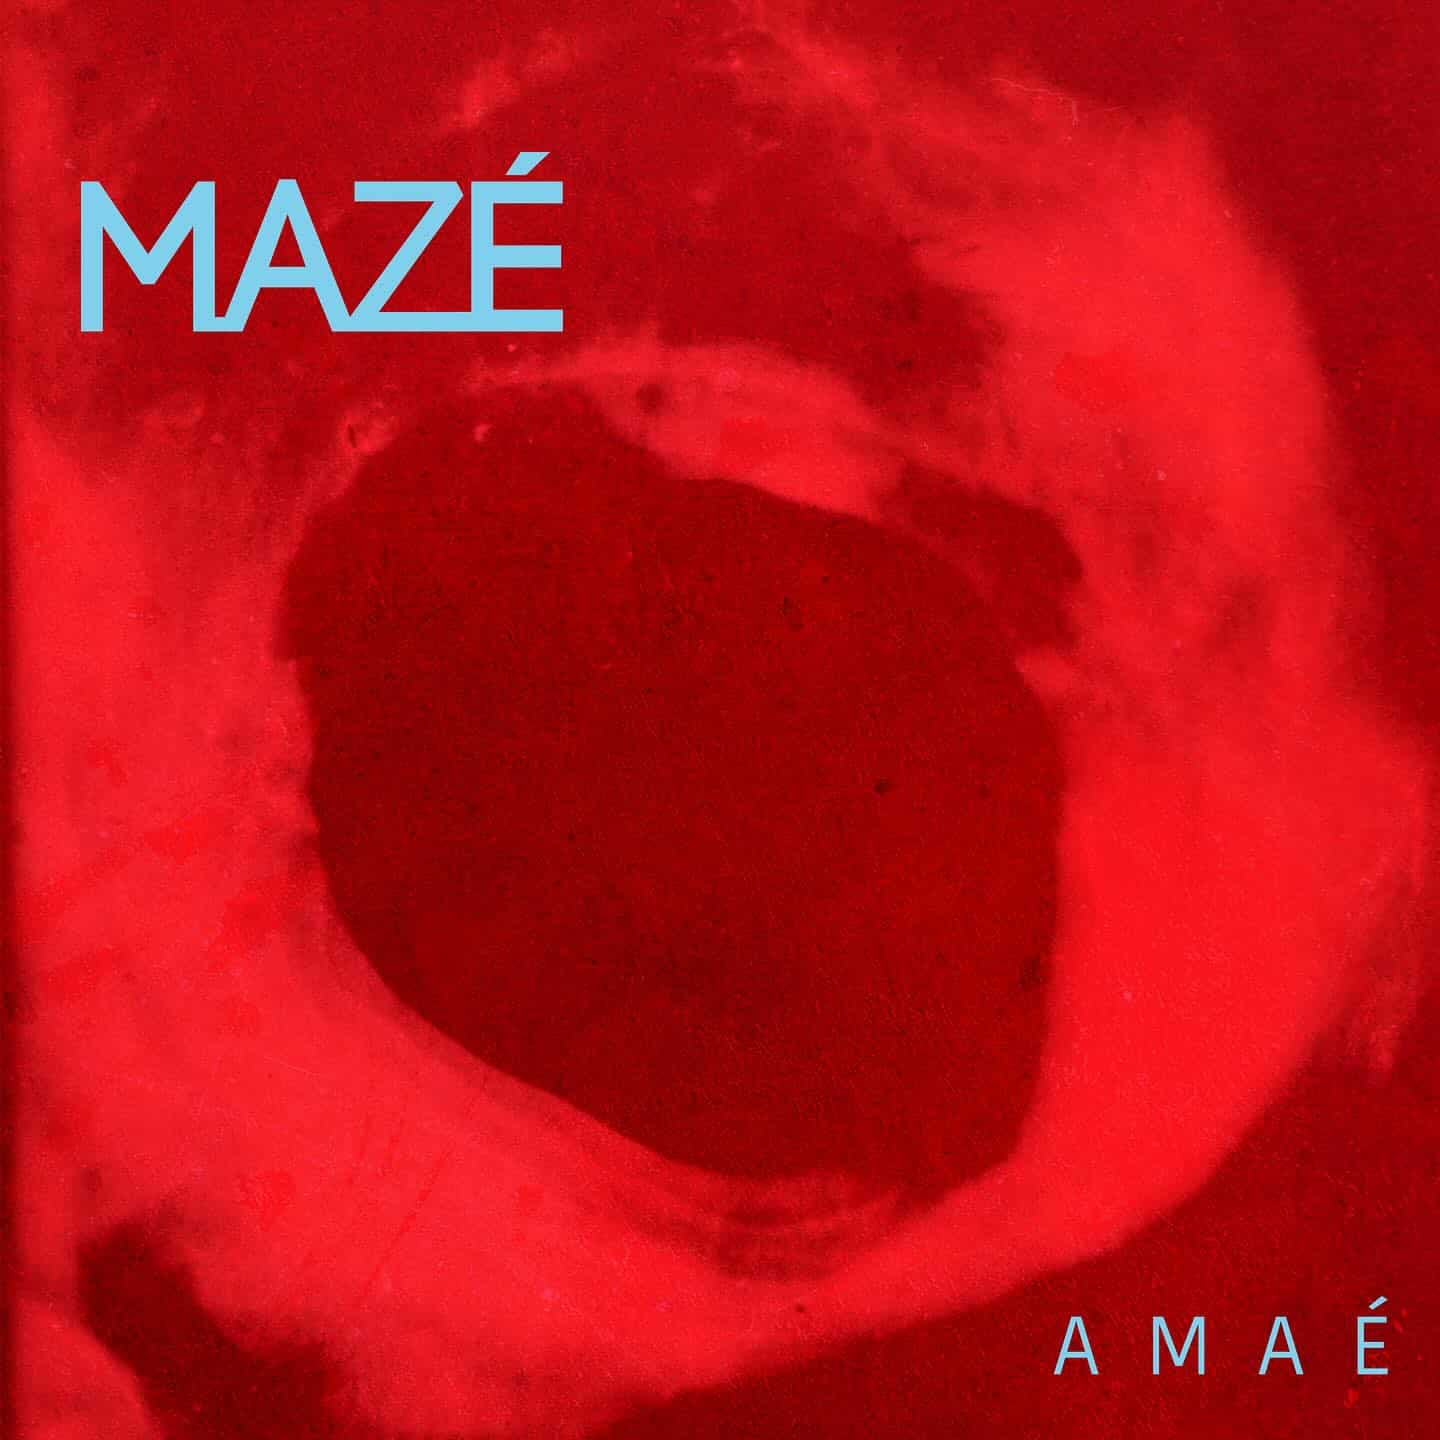 revistaprosaversoearte.com - Mazé Cintra lança o primeiro álbum solo 'Amaé'